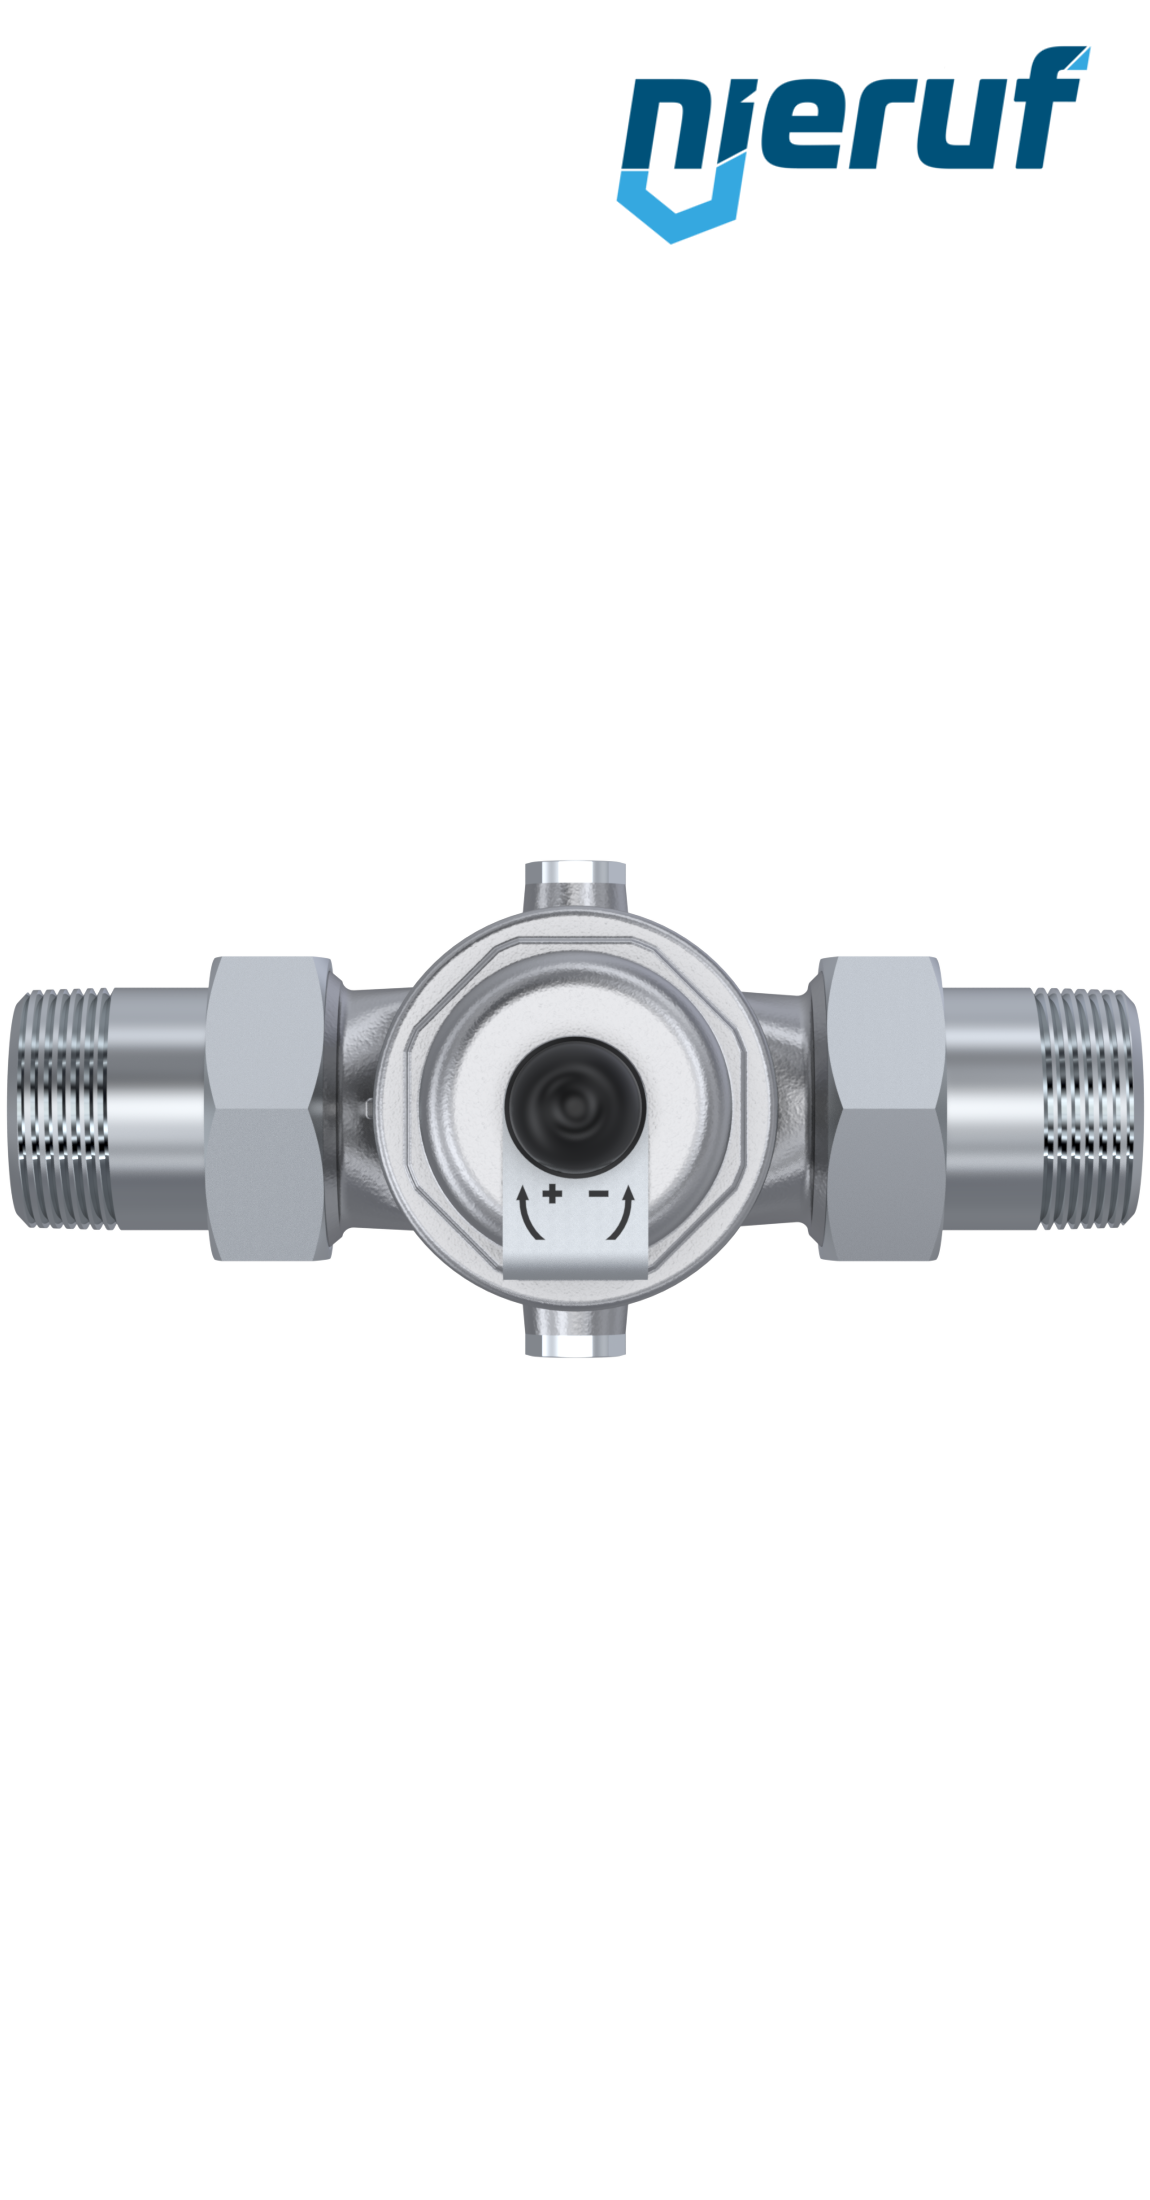 pressure reducing valve 2" inch male thread DM04 stainless steel FKM 1.0 - 8.0 bar